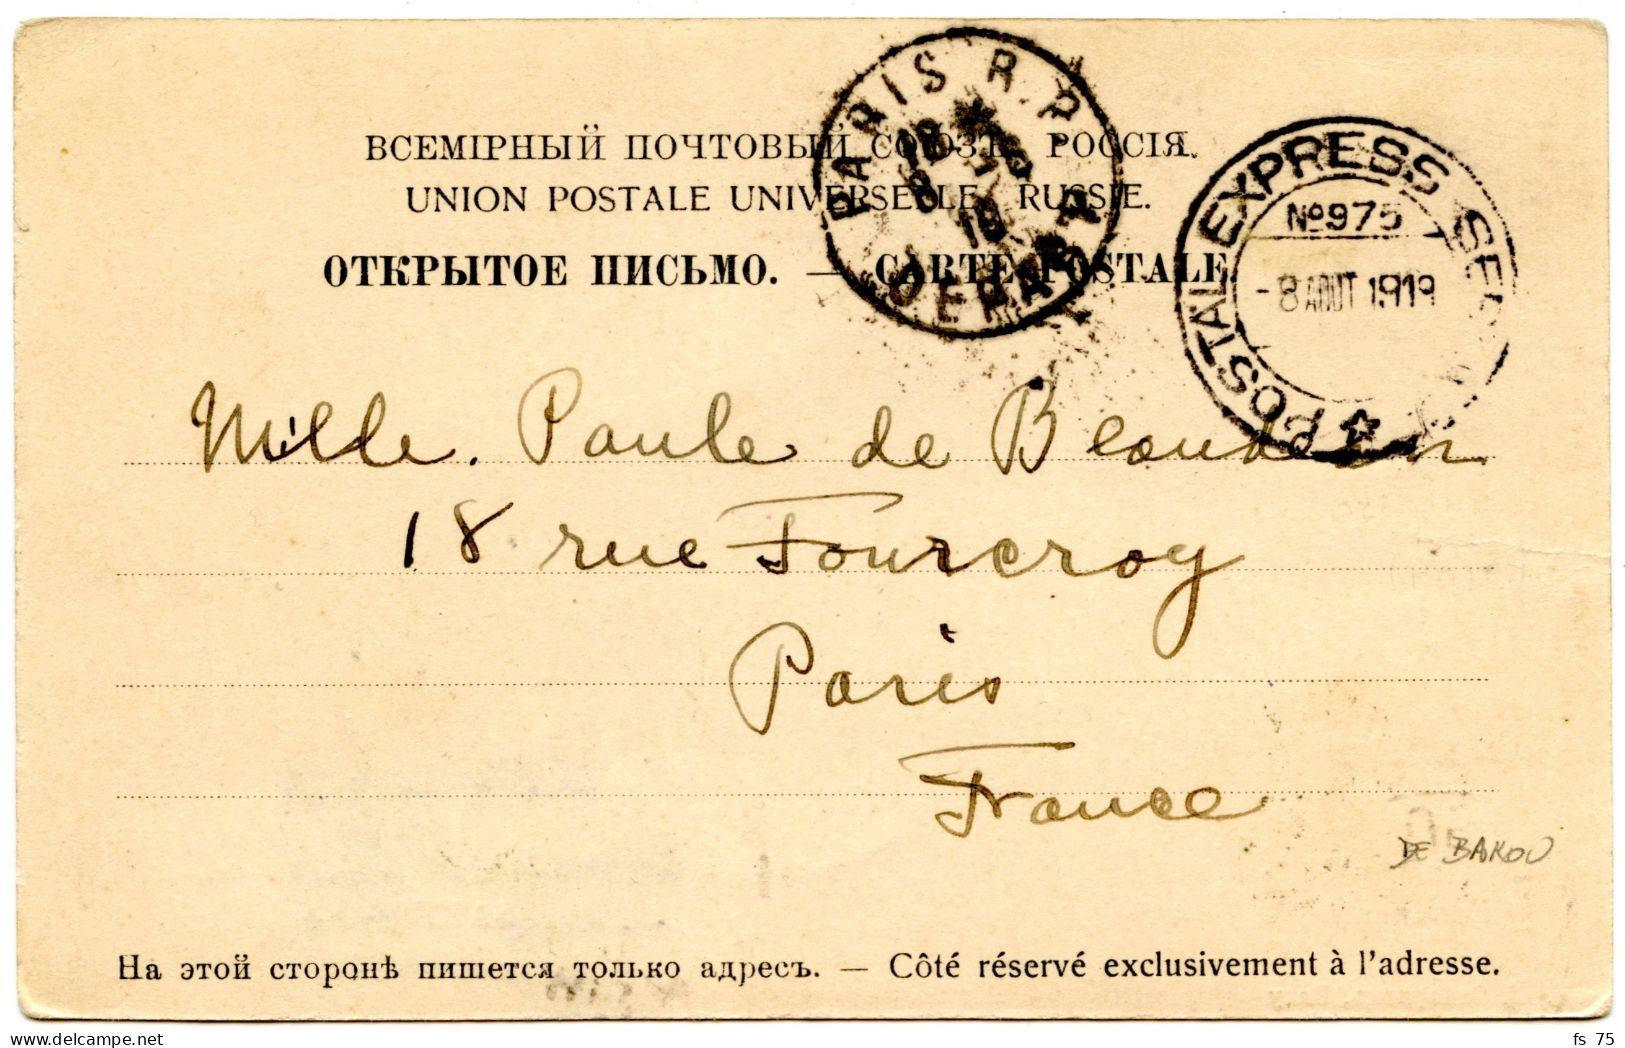 ETATS UNIS - POSTAL EXPRESS SERVICE N°975 SUR CARTE POSTALE DE BAKOU POUR LA FRANCE, AOUT 1919 - Poststempel